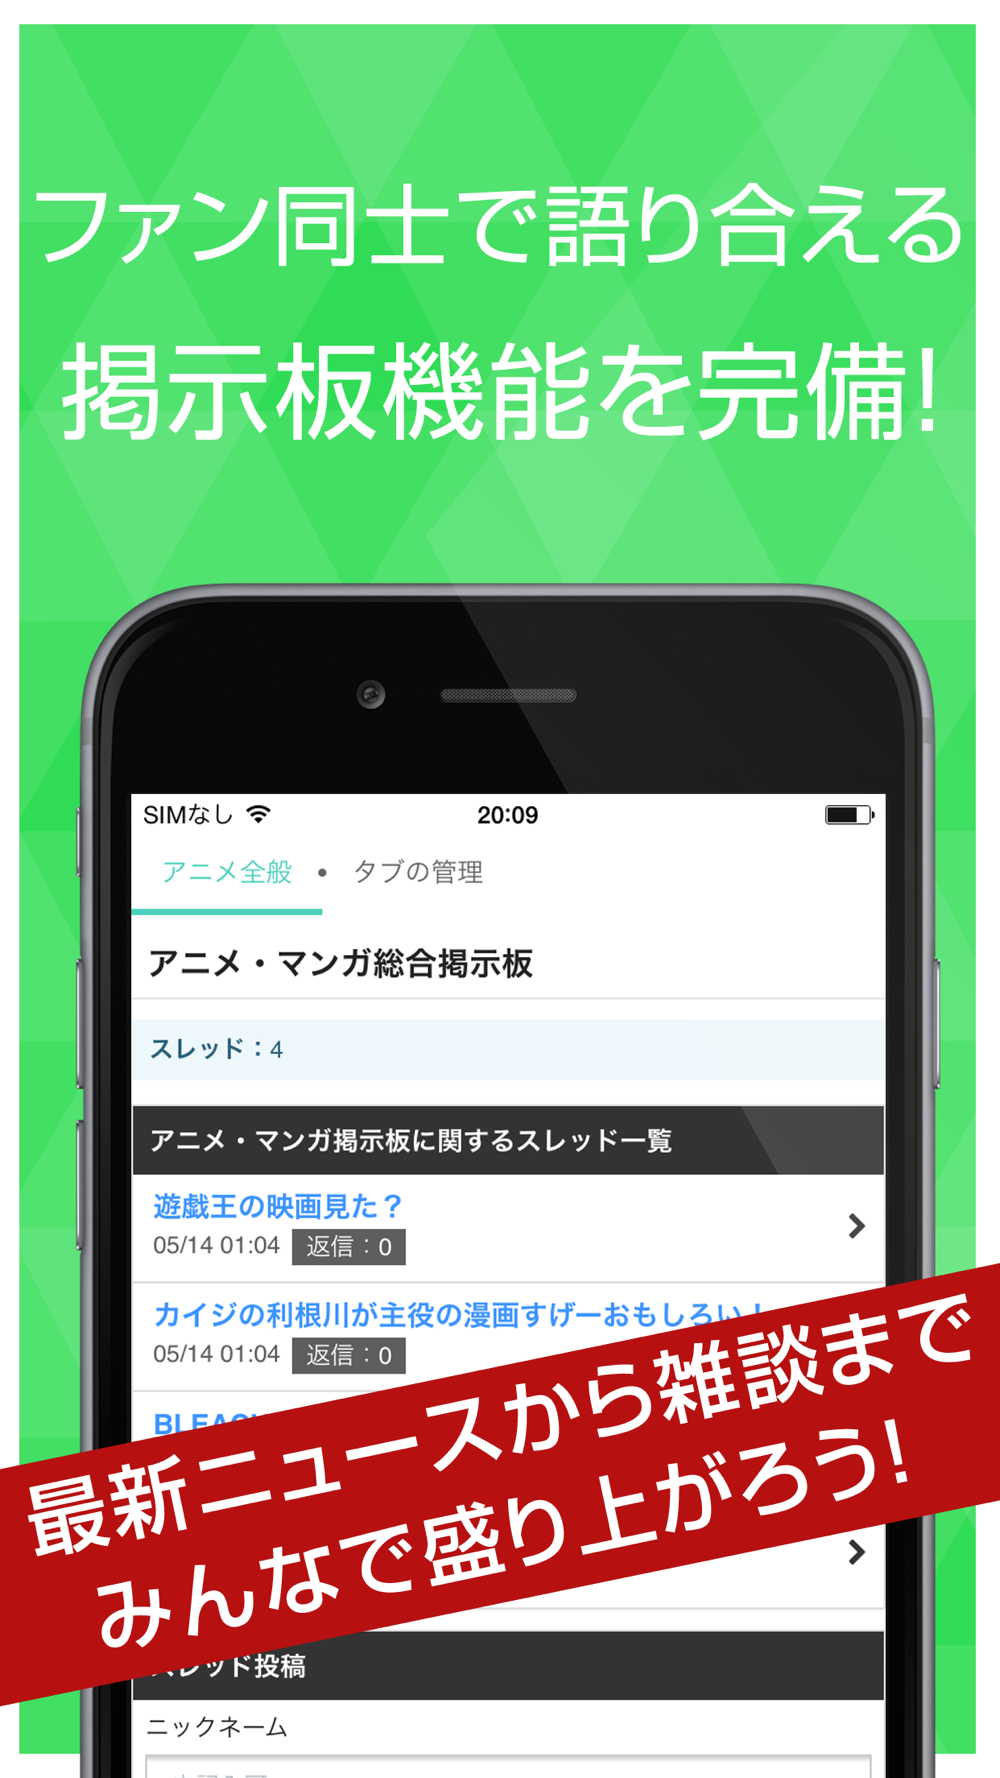 アニメ マンガまとめ速報 Free Download App For Iphone Steprimo Com